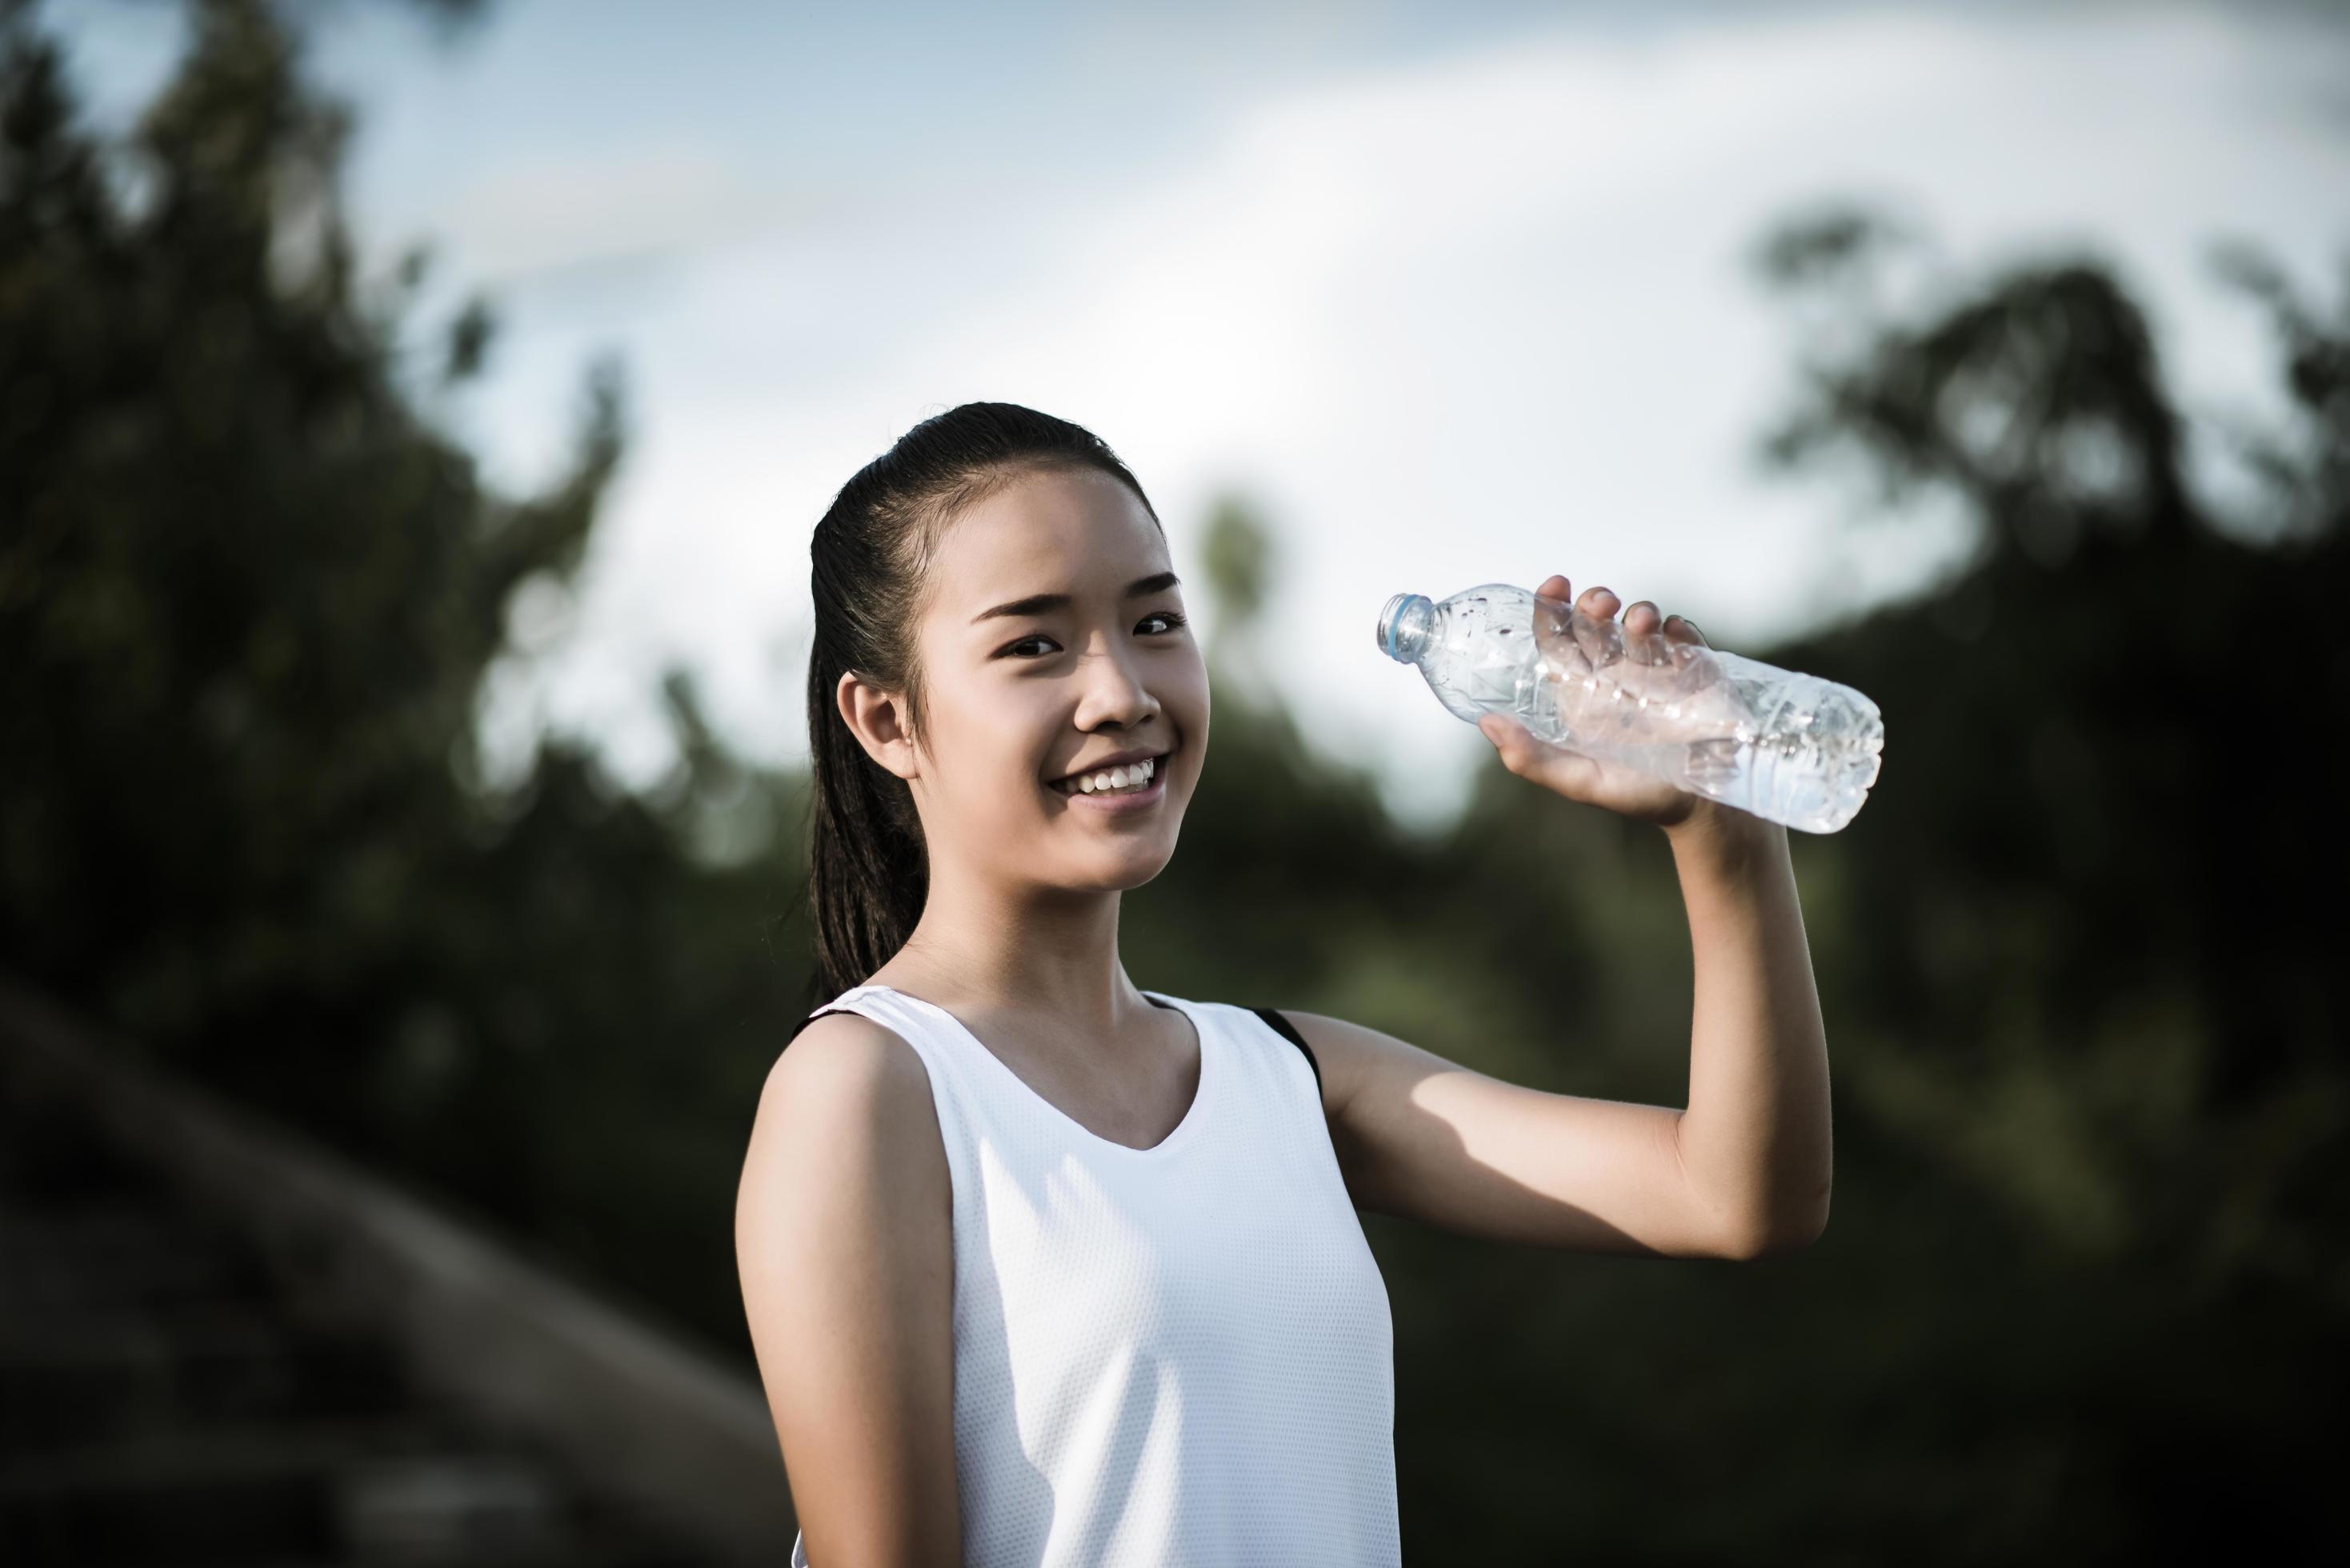 Девушка после воды. Девушка азиатка с бутылкой воды. Женщина с вода бакалажка. Девушка держит бутылку воды. Бутылка воды в руке девушки.